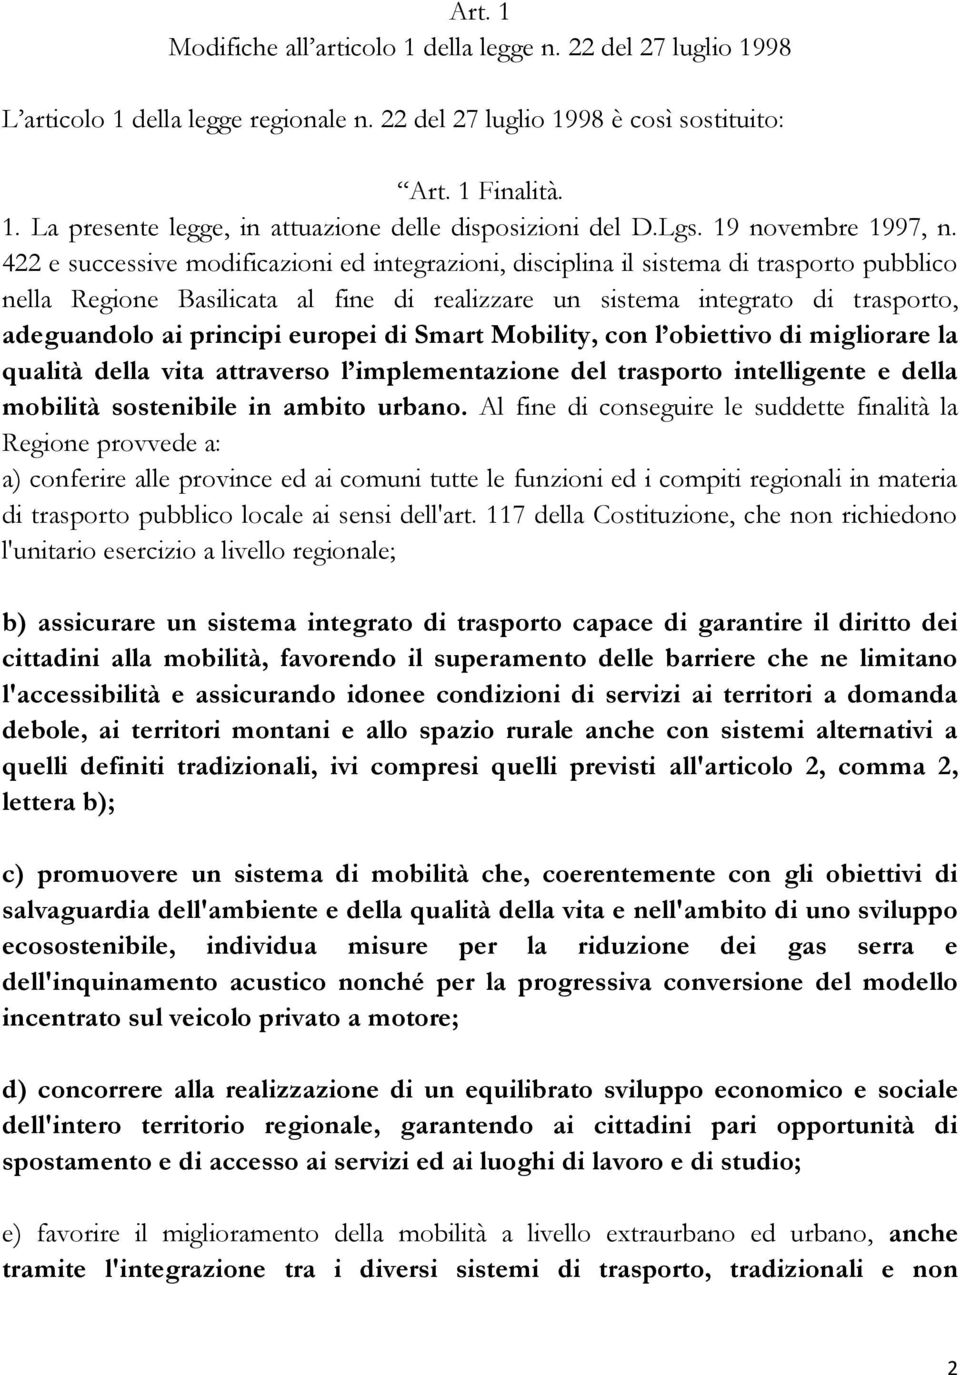 422 e successive modificazioni ed integrazioni, disciplina il sistema di trasporto pubblico nella Regione Basilicata al fine di realizzare un sistema integrato di trasporto, adeguandolo ai principi